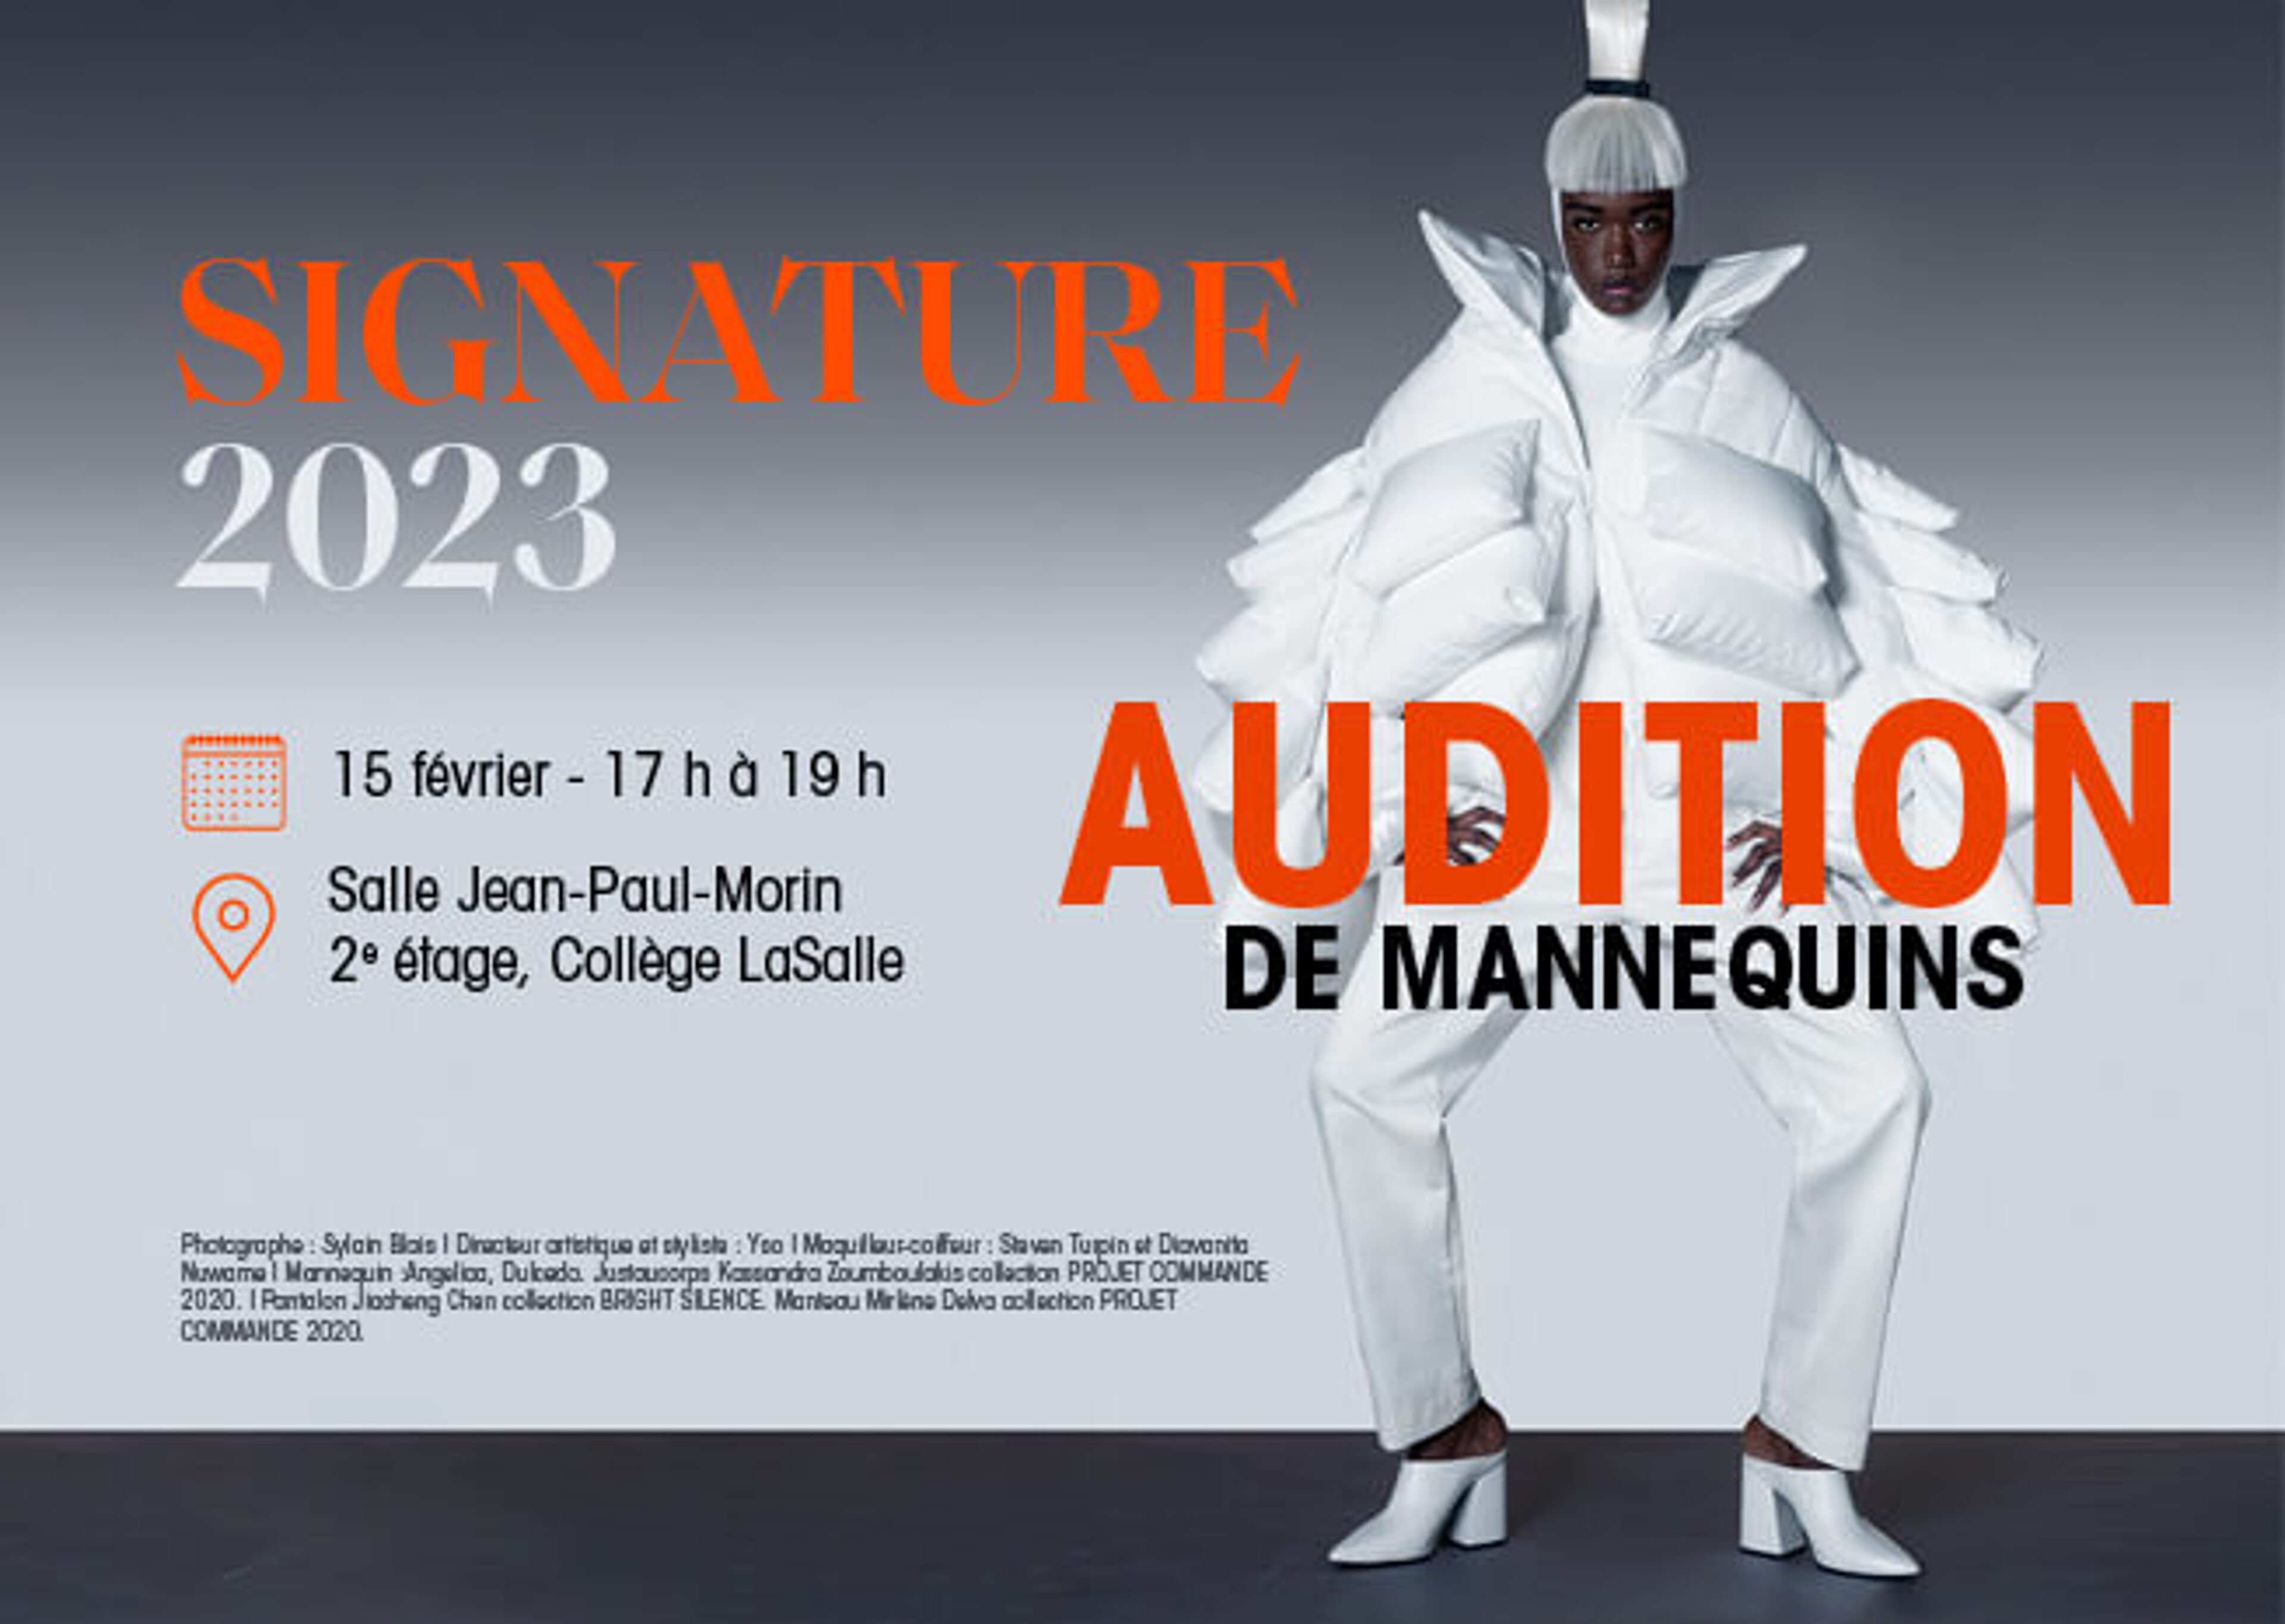 Annonce d'un événement de casting de mannequins pour SIGNATURE 2023 le 15 février à la Salle Jean-Paul-Morin du Collège LaSalle, présentant un mannequin en tenue avant-gardiste.